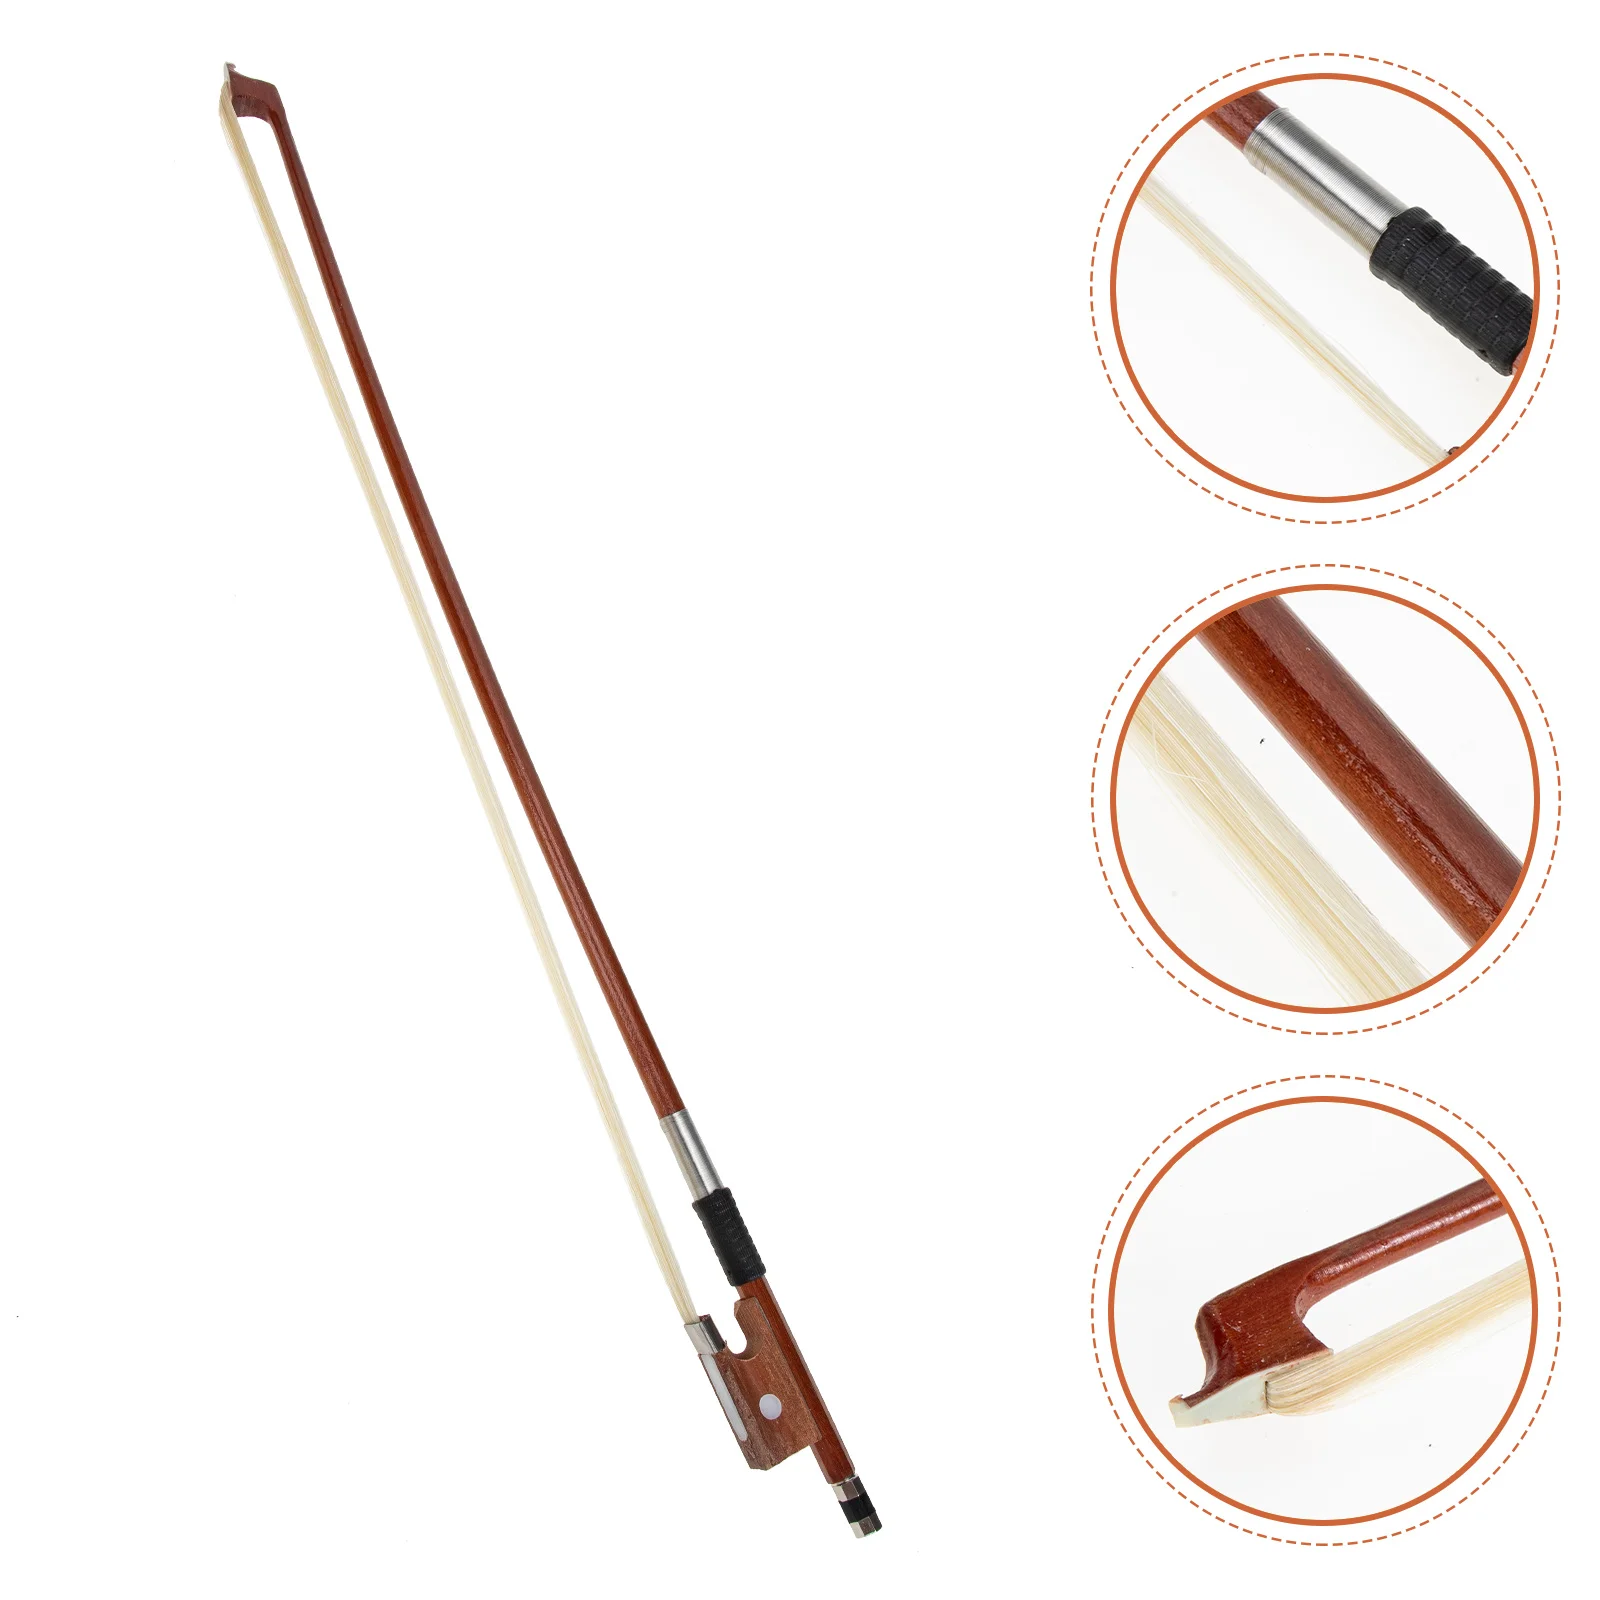 

Музыкальные аксессуары для скрипки, аксессуар, деревянное хорошо сбалансированное музыкальное оборудование для волос, практичное студенческое